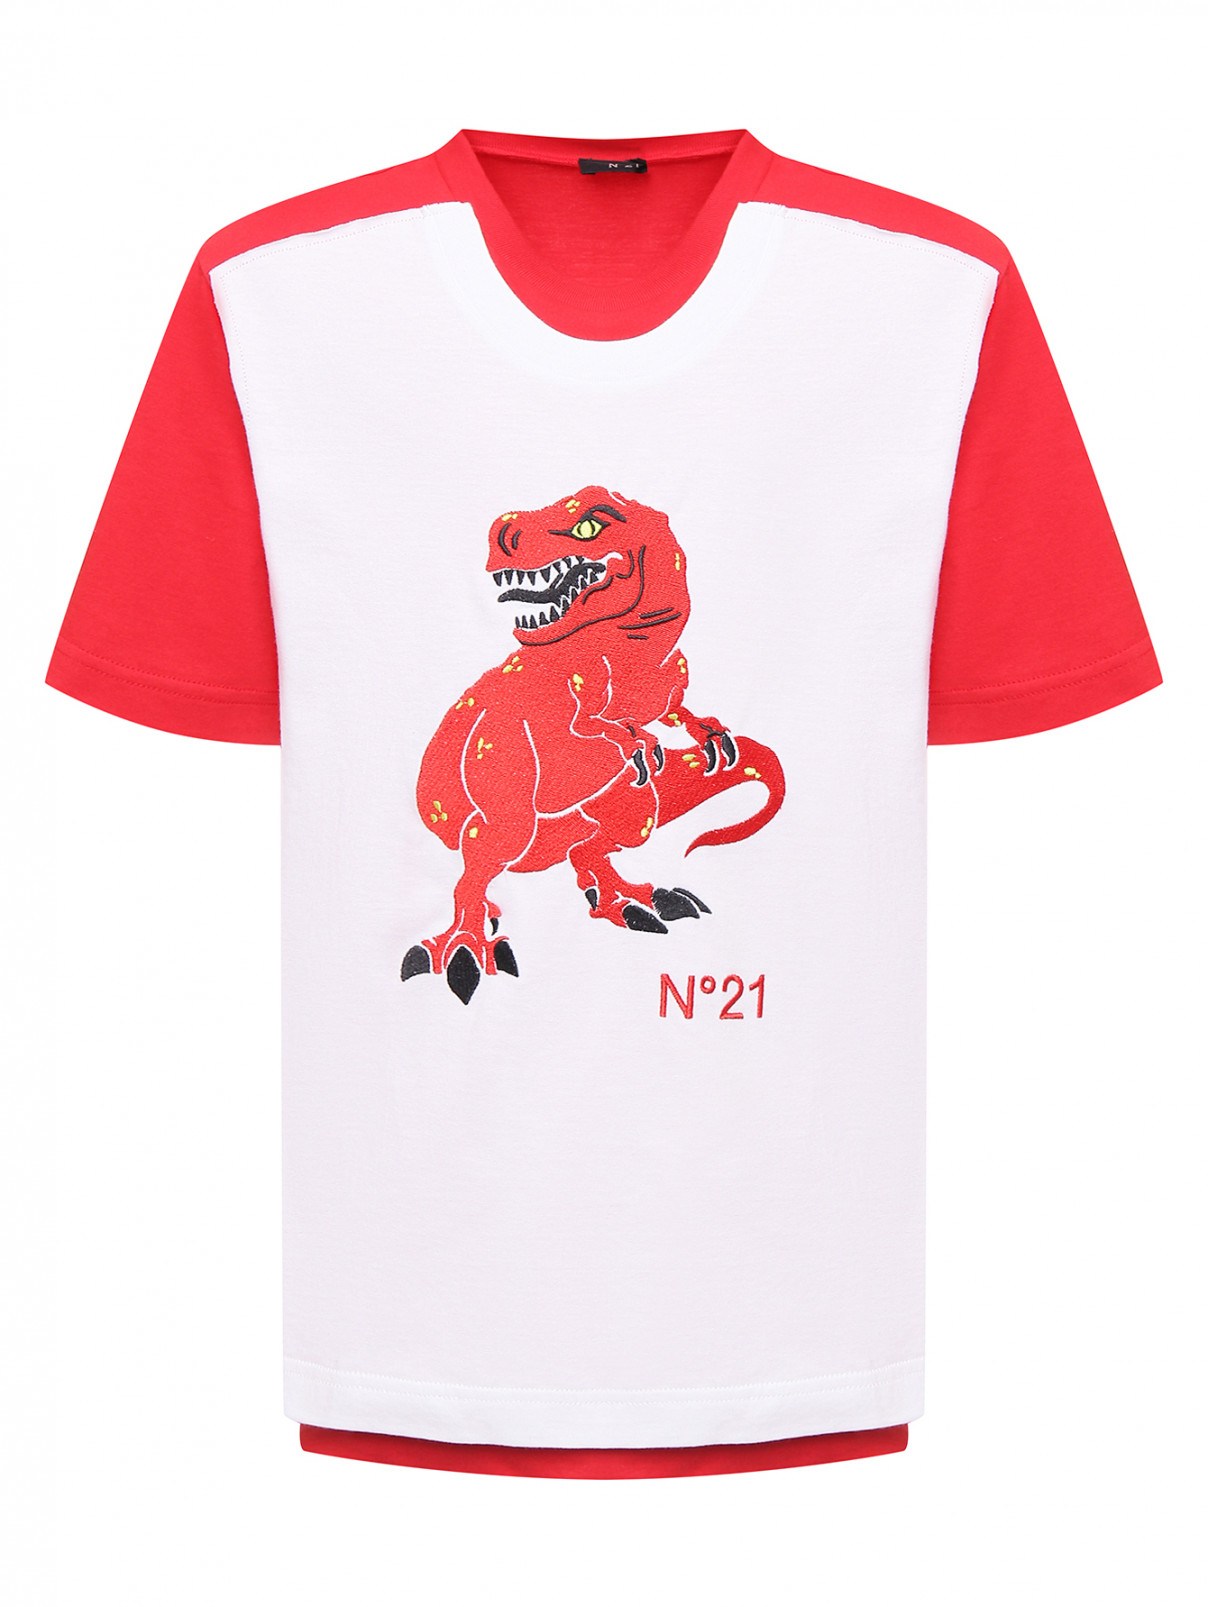 Хлопковая футболка с вышивкой N21  –  Общий вид  – Цвет:  Красный